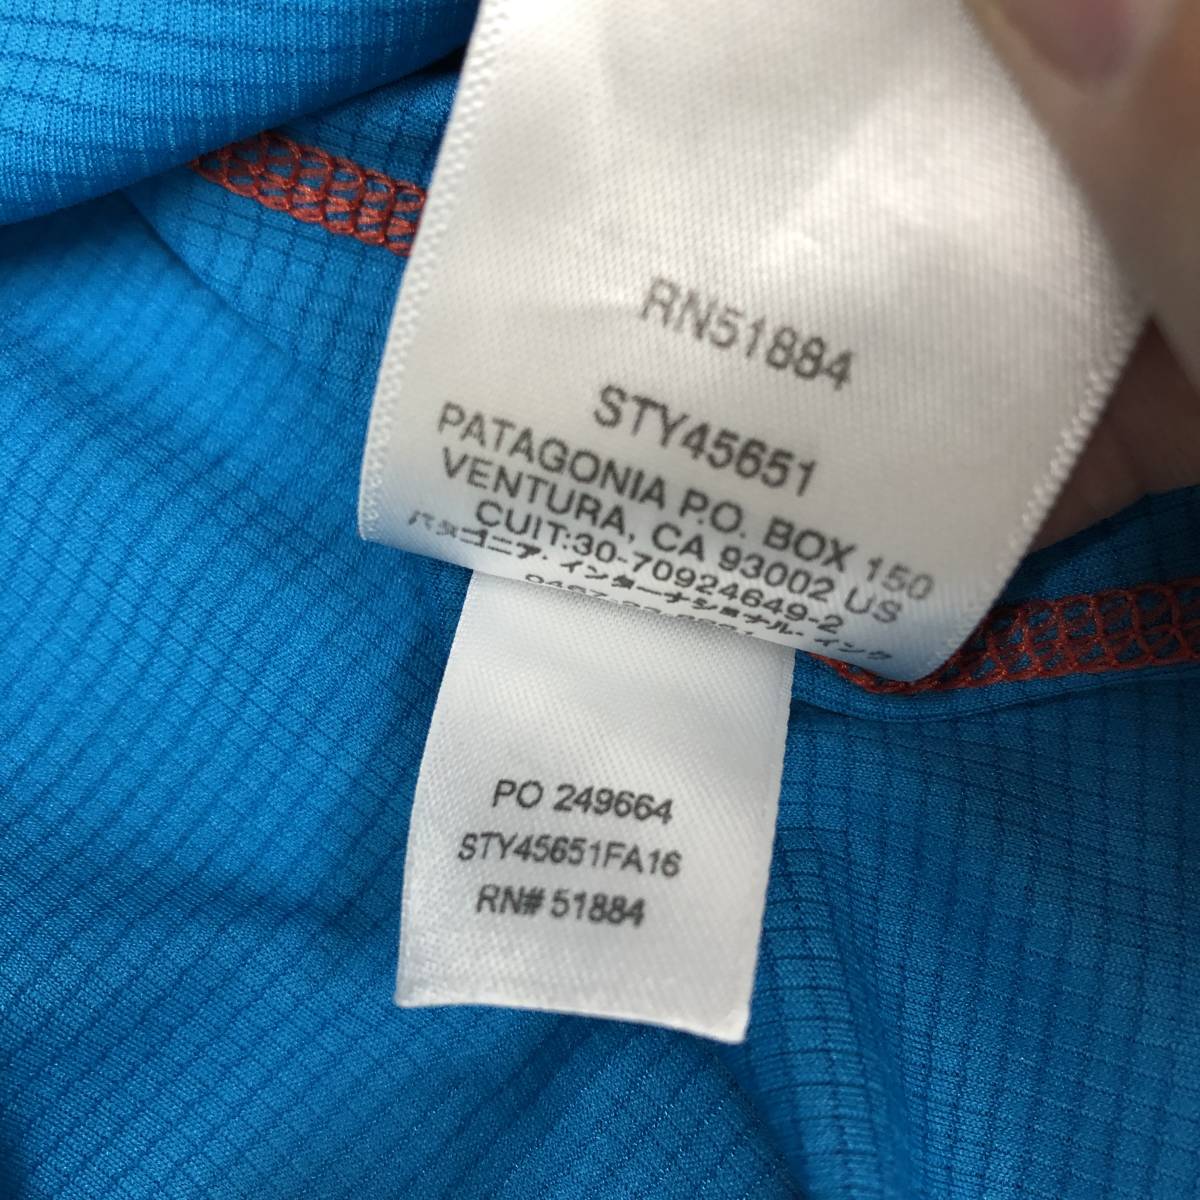 パタゴニア(patagonia) M's Cap LW T-Shirt(メンズ キャプリーン ライトウェイト Tシャツ) 45651 ブルー Mサイズ